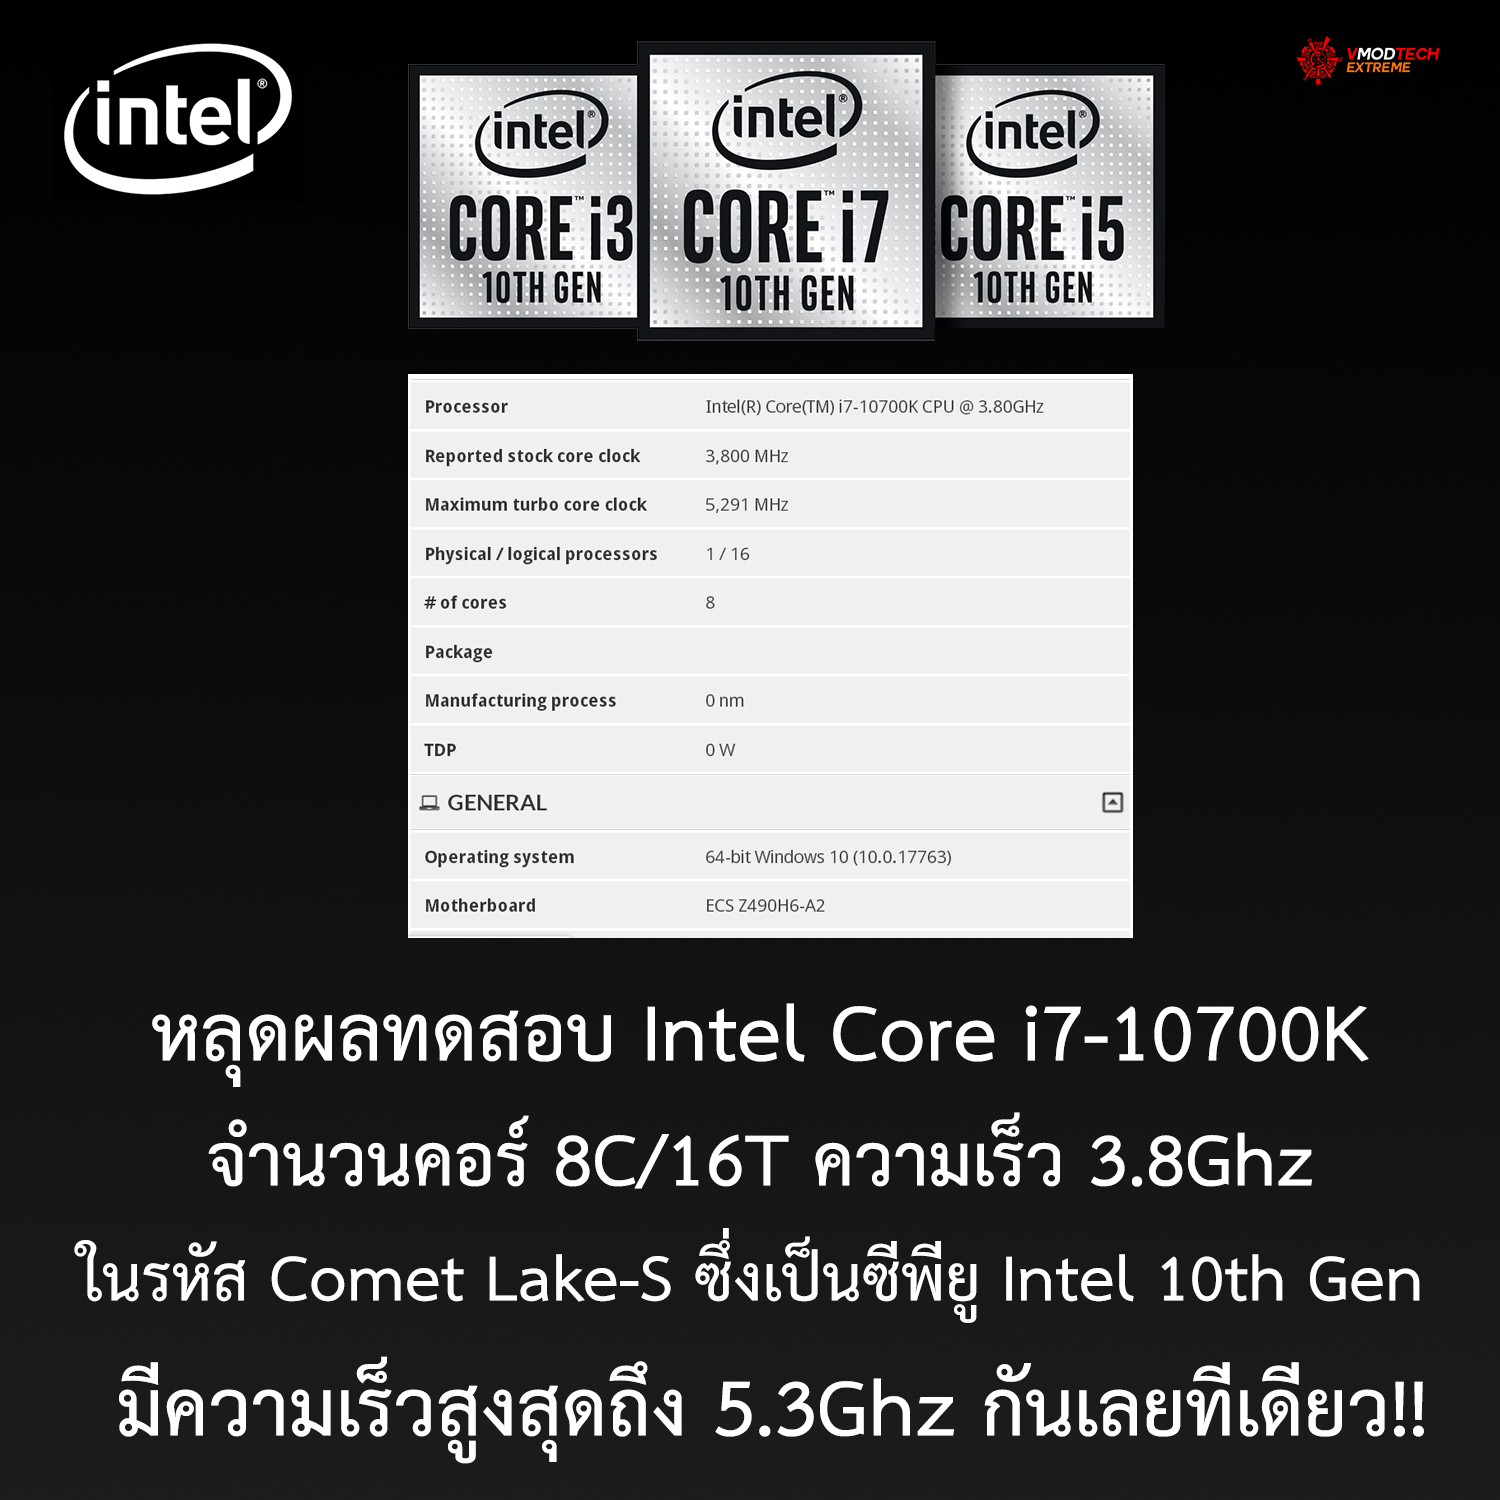 หลุดผลทดสอบ Intel Core i7-10700K อย่างไม่เป็นทางการ มีจำนวนคอร์ 8C/16T ความเร็วสูงสุดถึง 5.3Ghz กันเลยทีเดียว!!